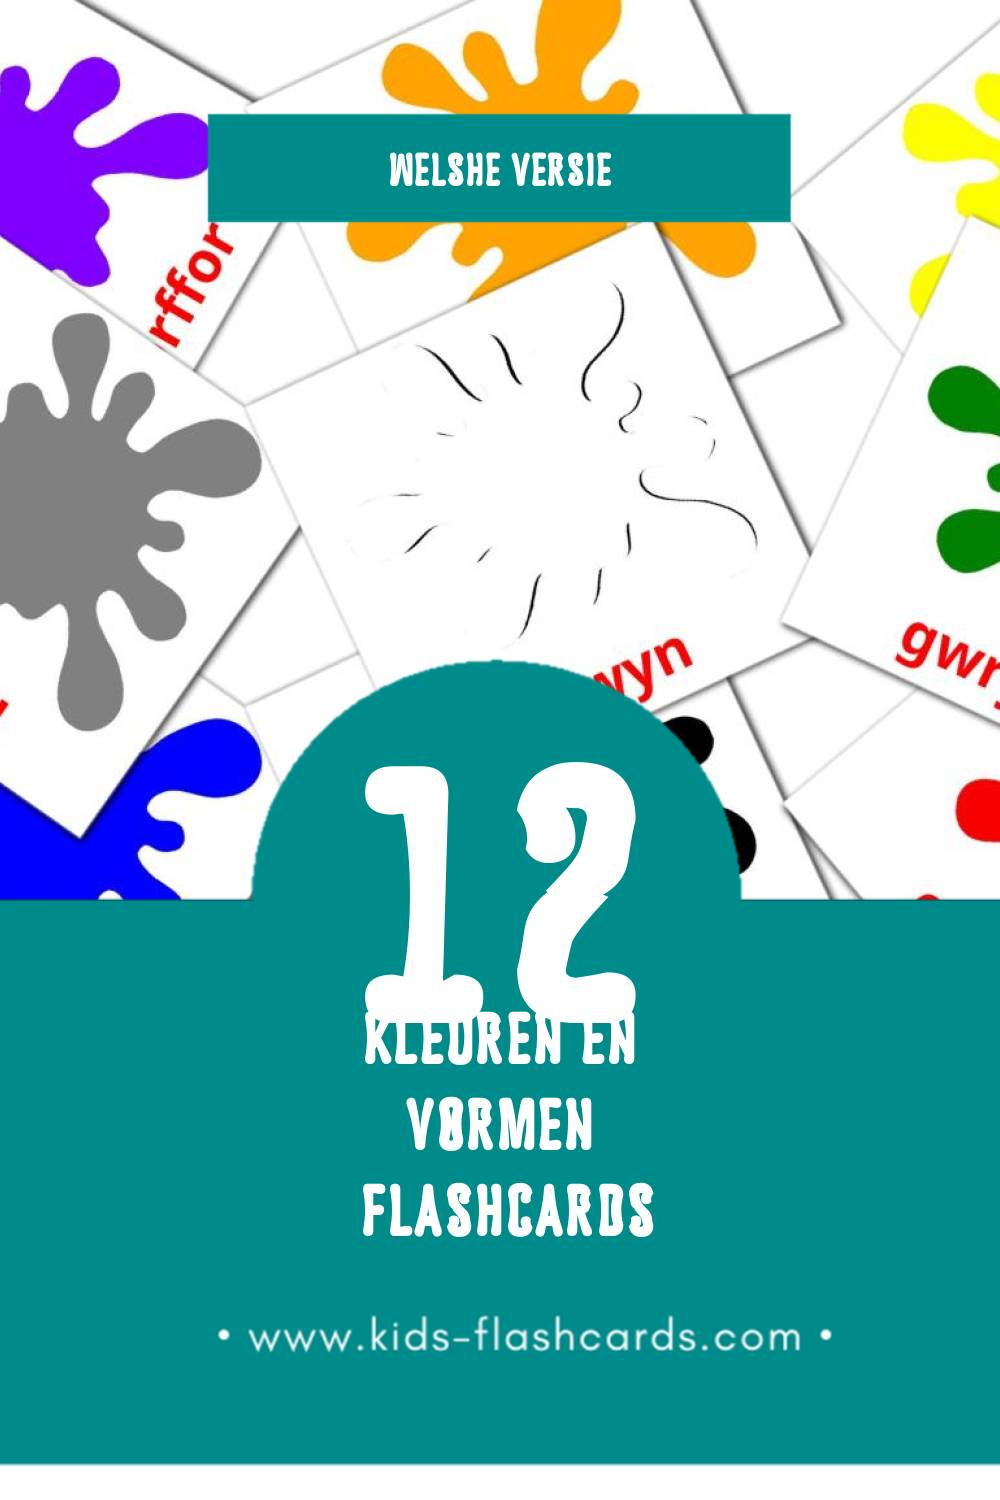 Visuele Lliwiau a siapiau Flashcards voor Kleuters (12 kaarten in het Welsh)